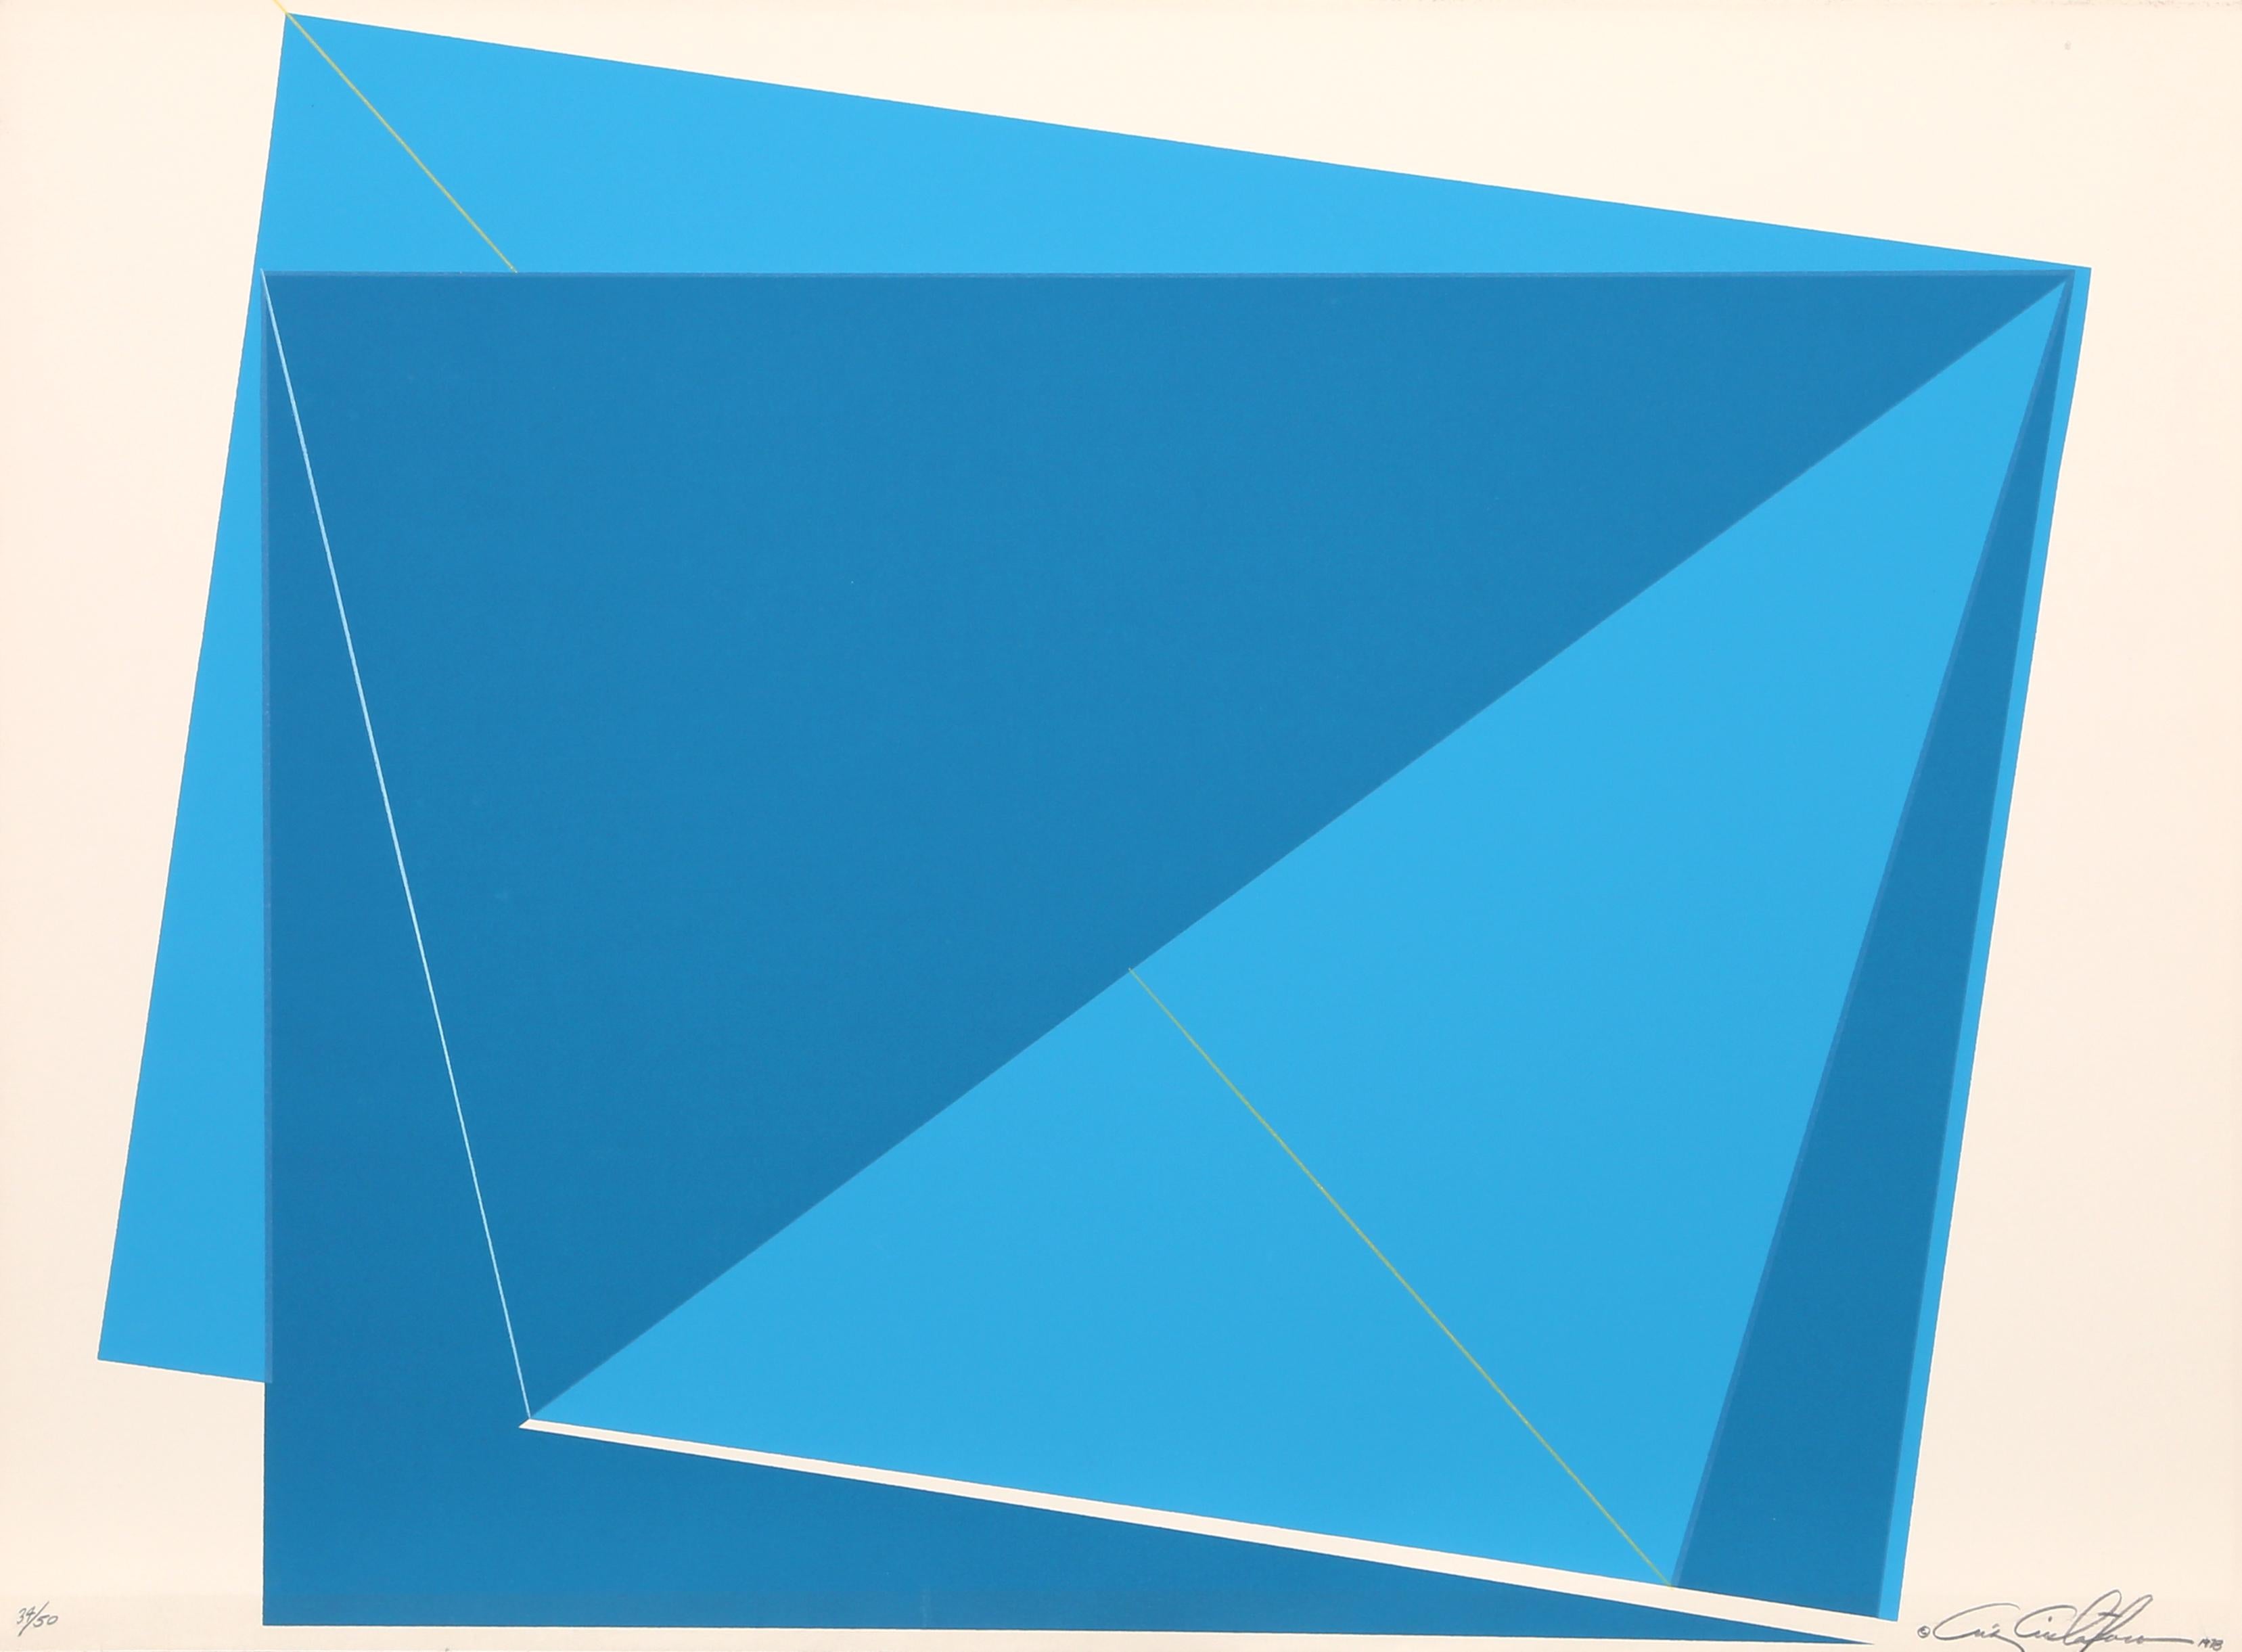 Chris Cristofaro Abstract Print - Blue Rectangles, SIlkscreen by Cris Cristofaro 1978